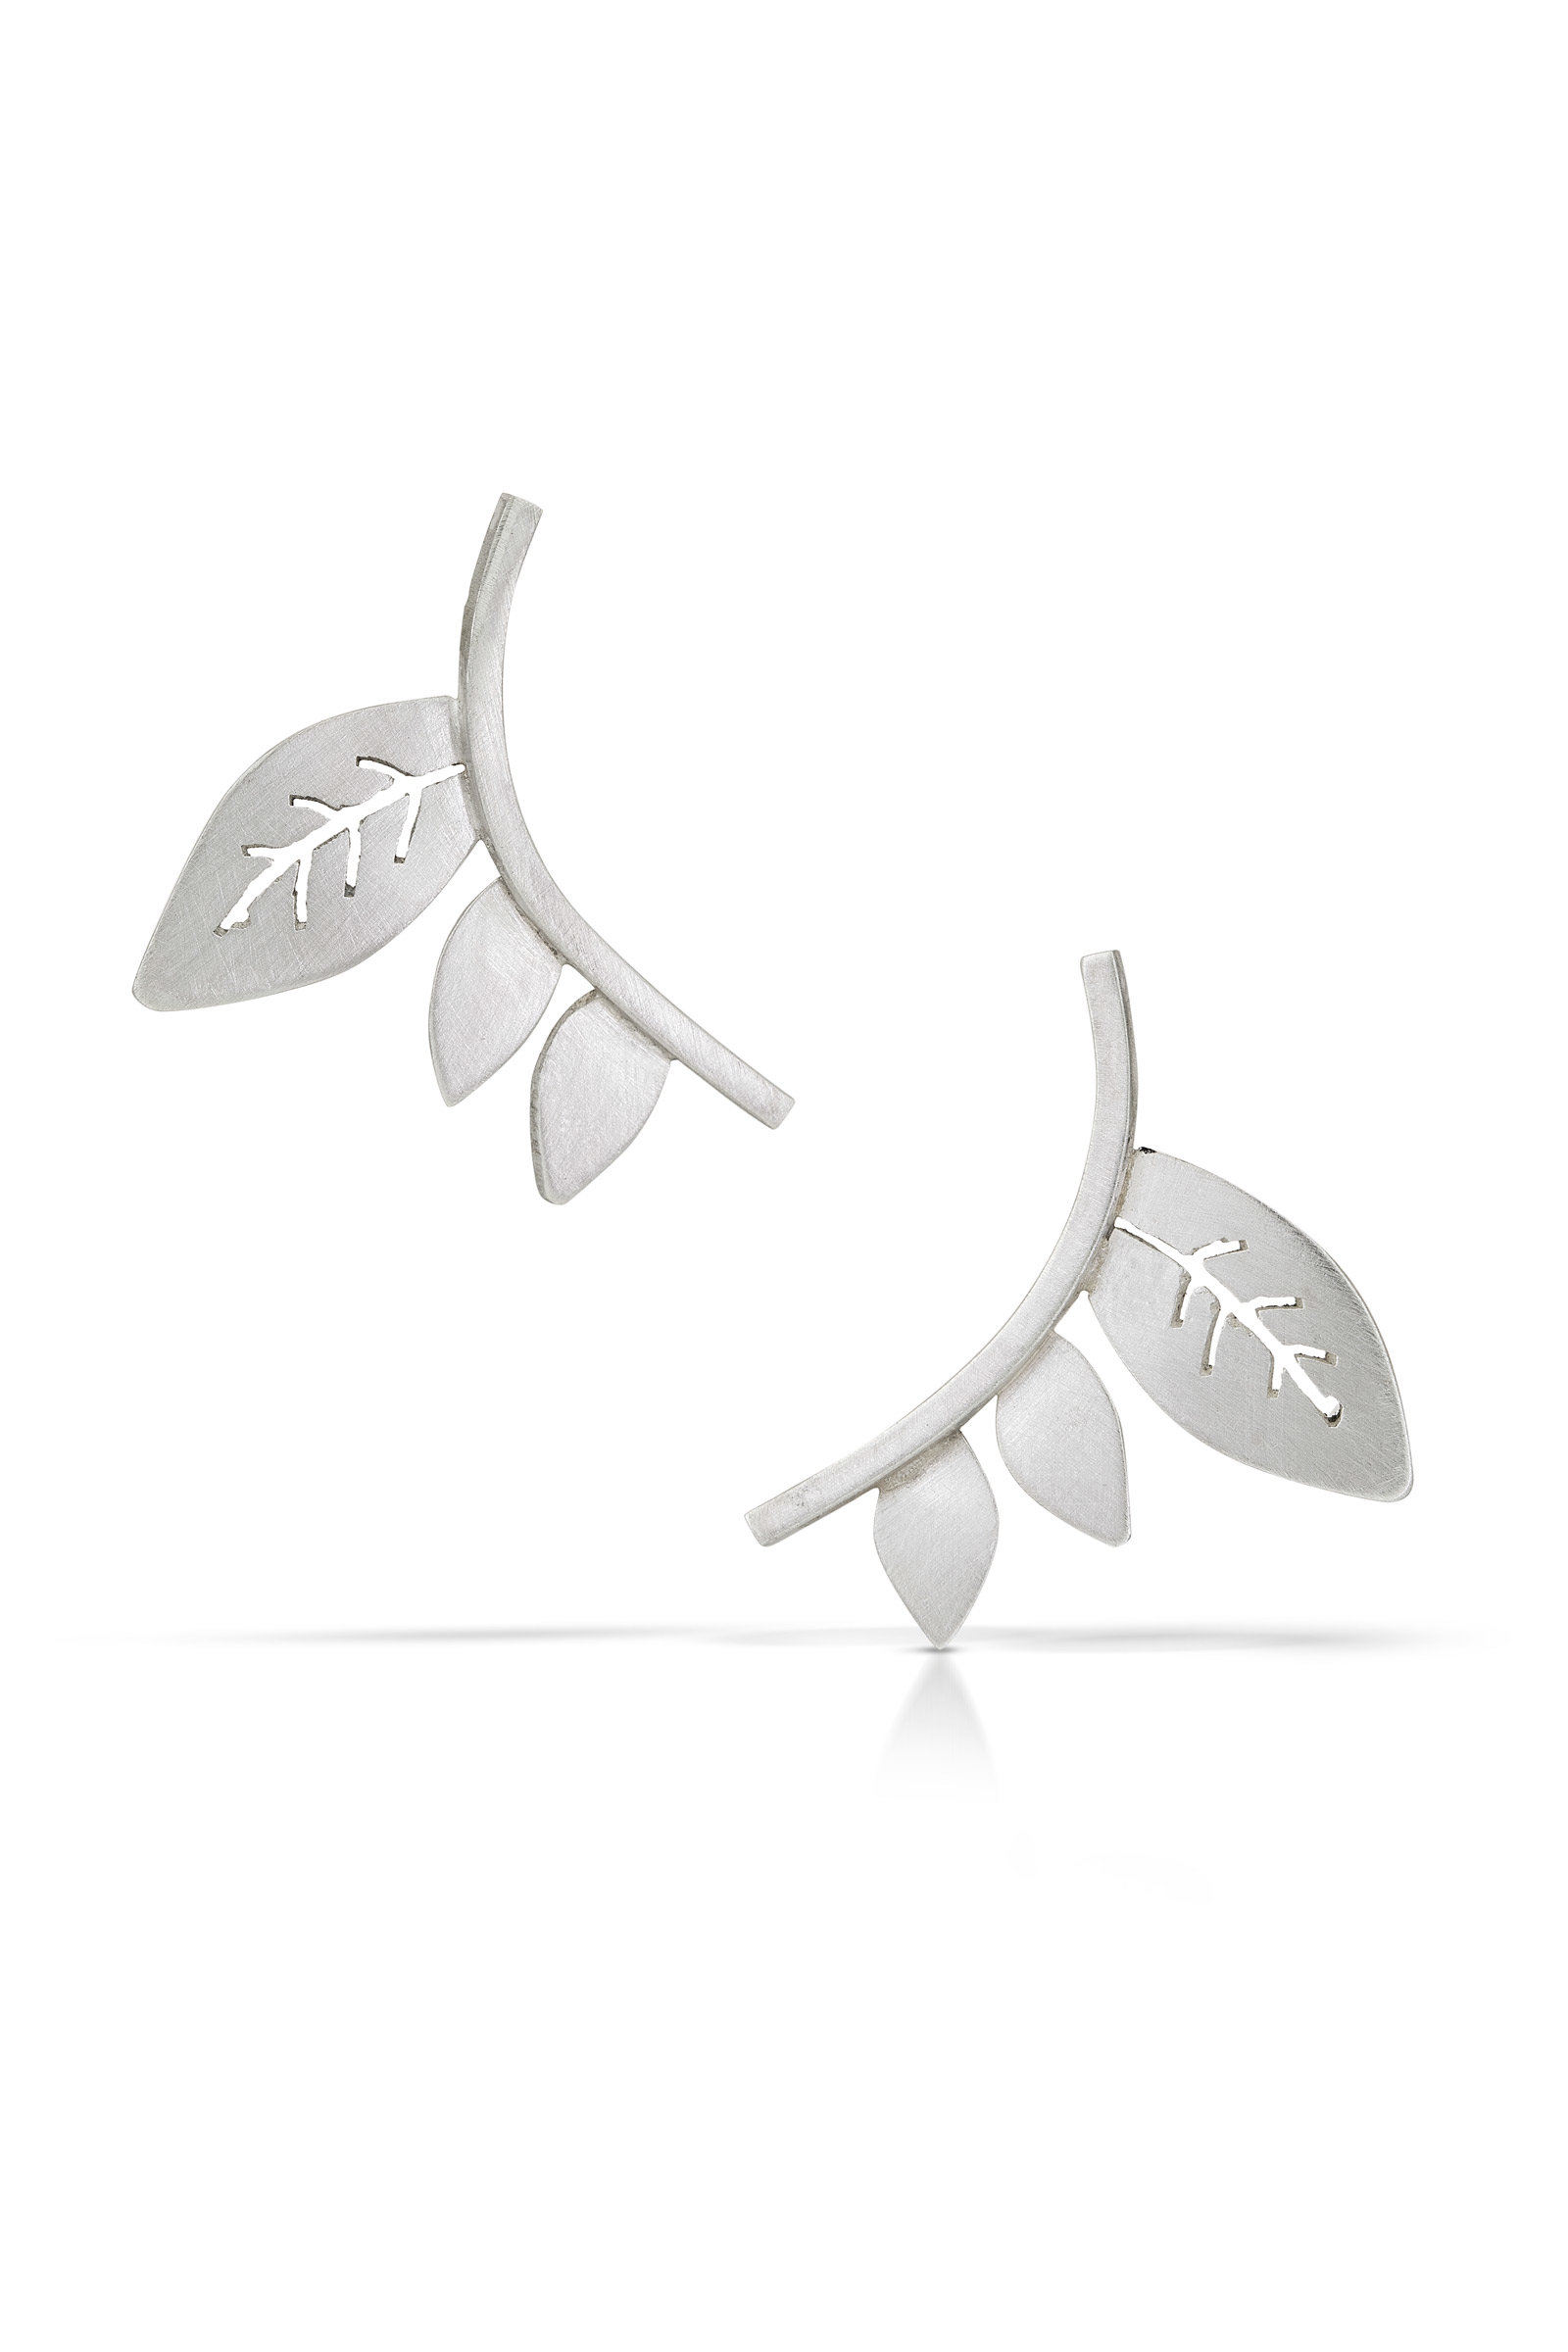 Twig Earrings II by Marcia Meyers (Silver Earrings